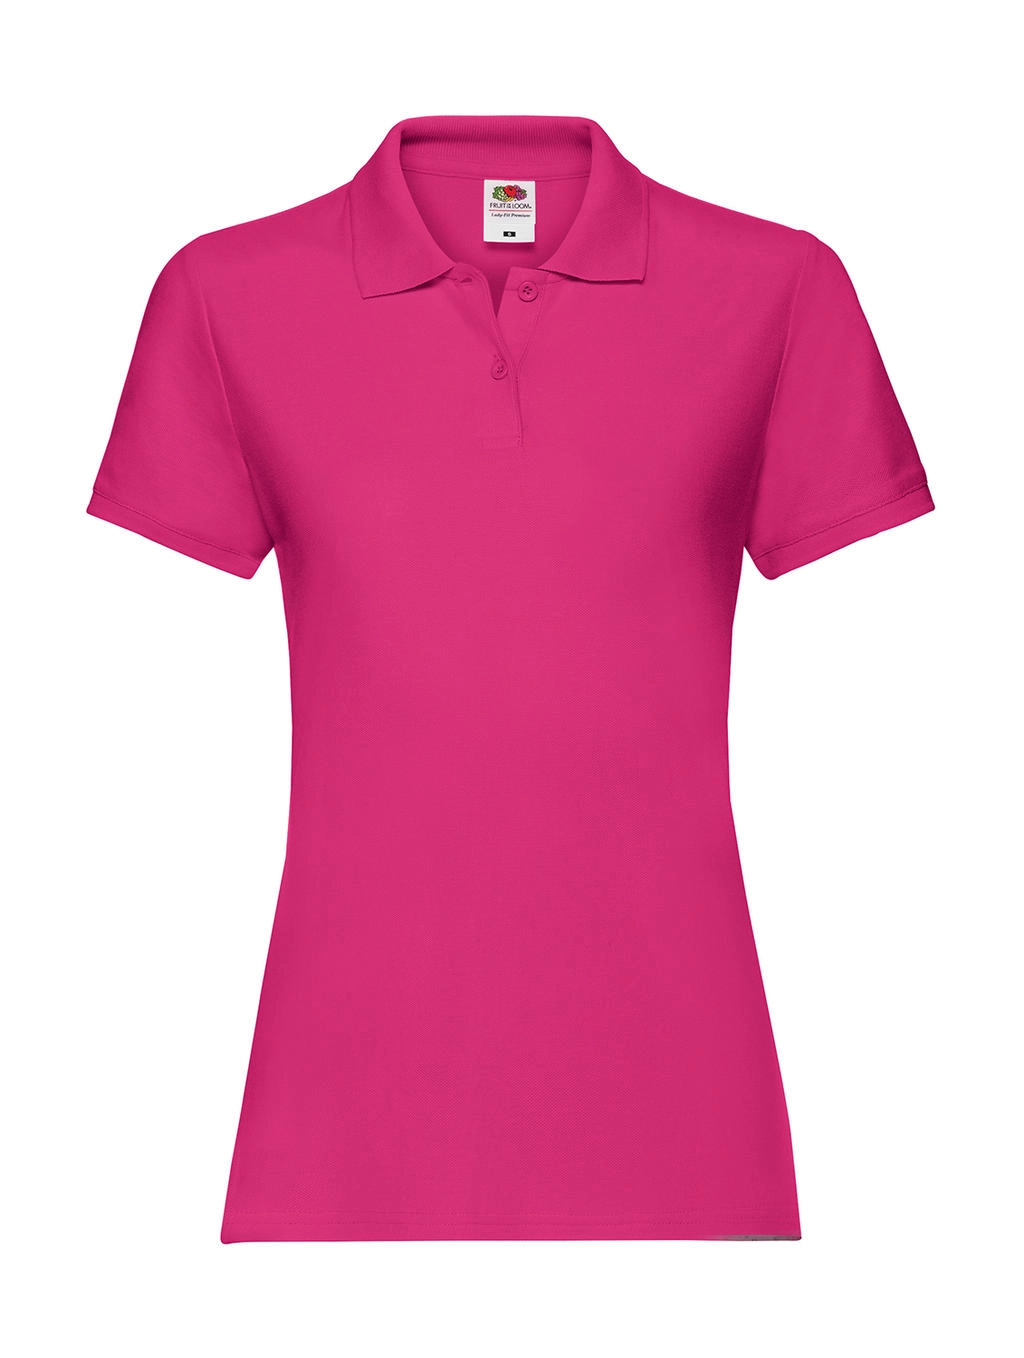 Ladies` Premium Polo zum Besticken und Bedrucken in der Farbe Fuchsia mit Ihren Logo, Schriftzug oder Motiv.